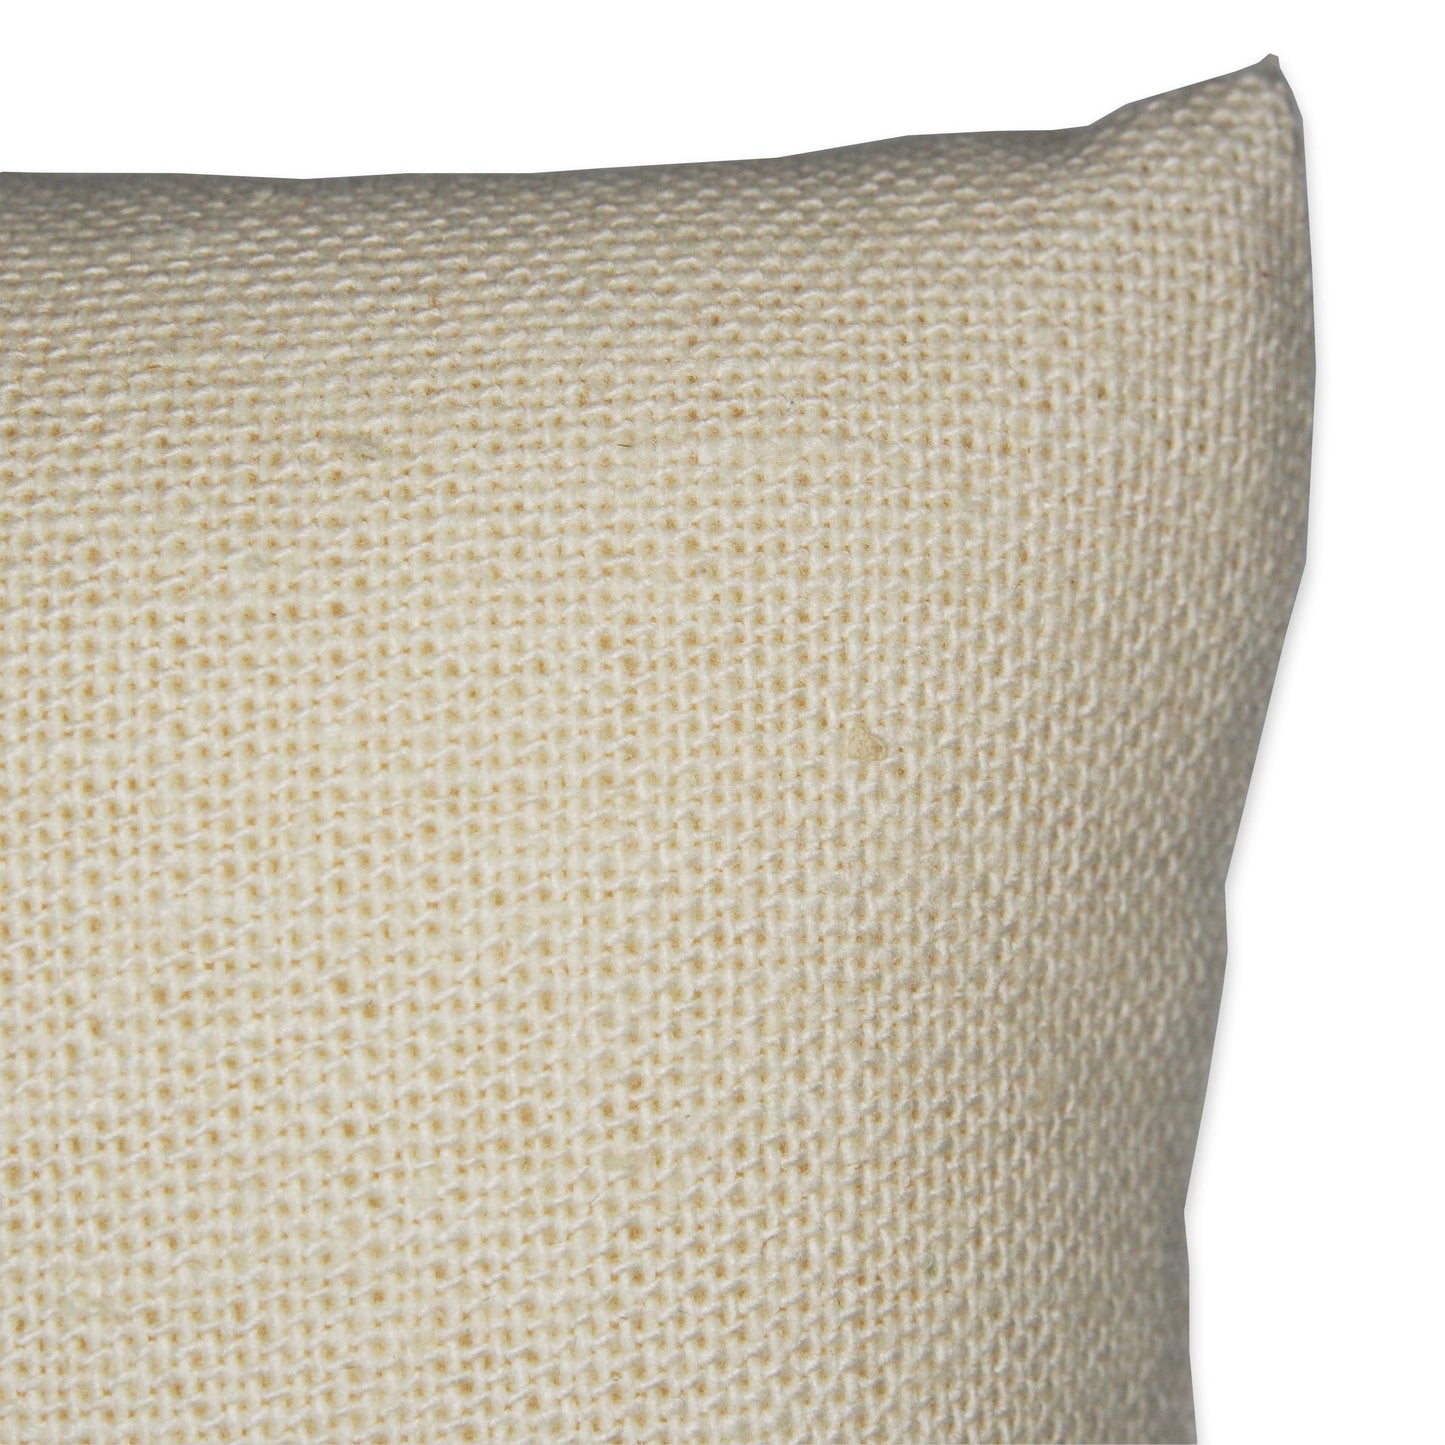 5" Beige Linen Pillow Displays